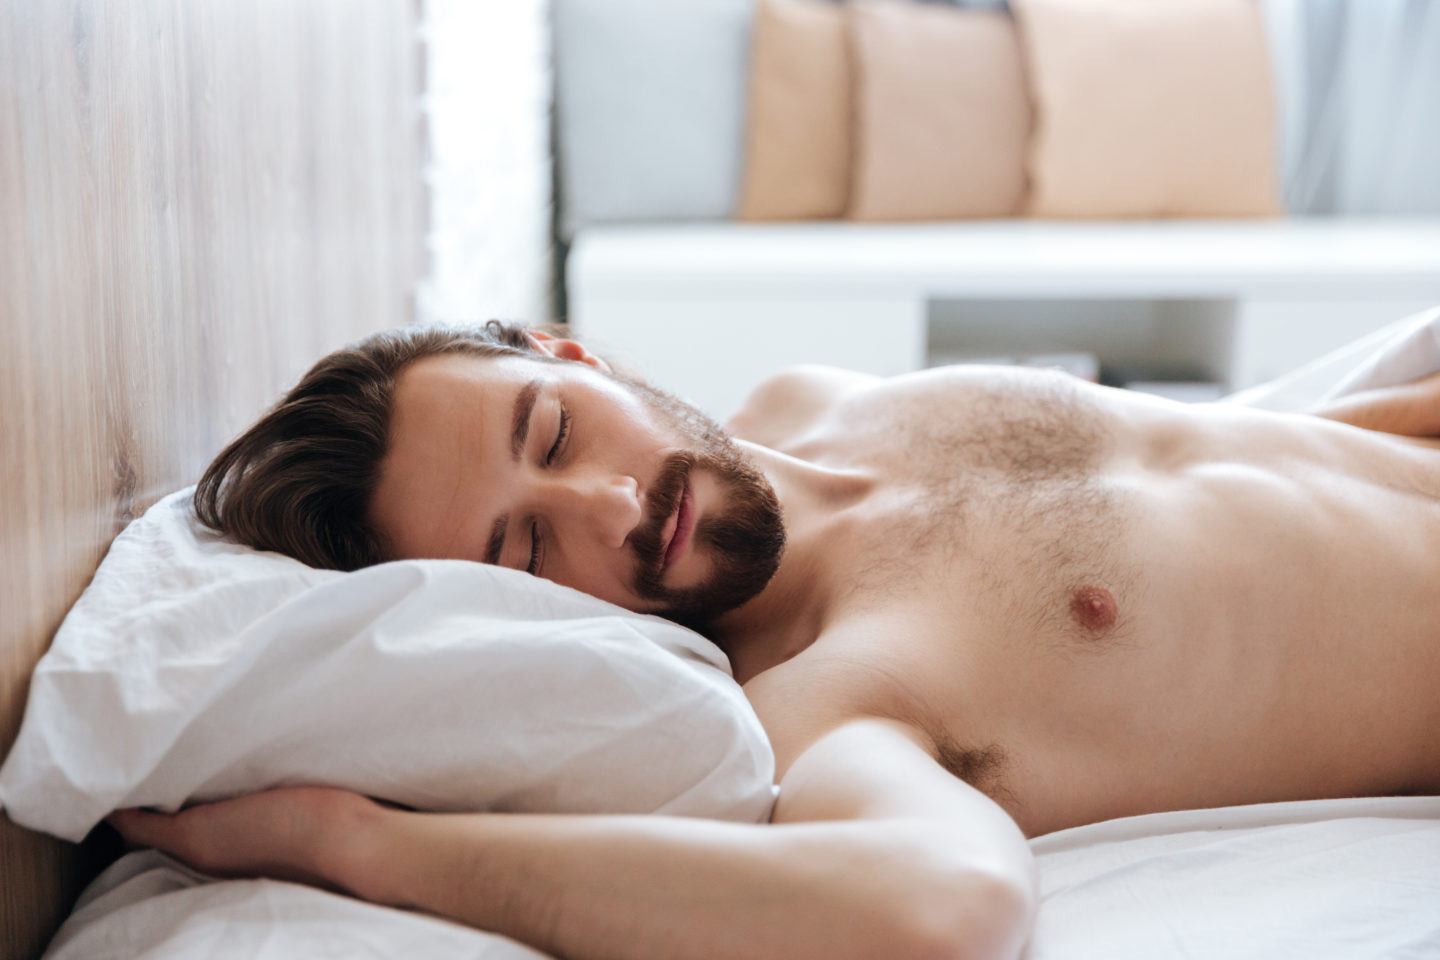 Сон на спине позволяет равномерно распределить вес тела по поверхности постели, избавив позвоночник от лишней нагрузки